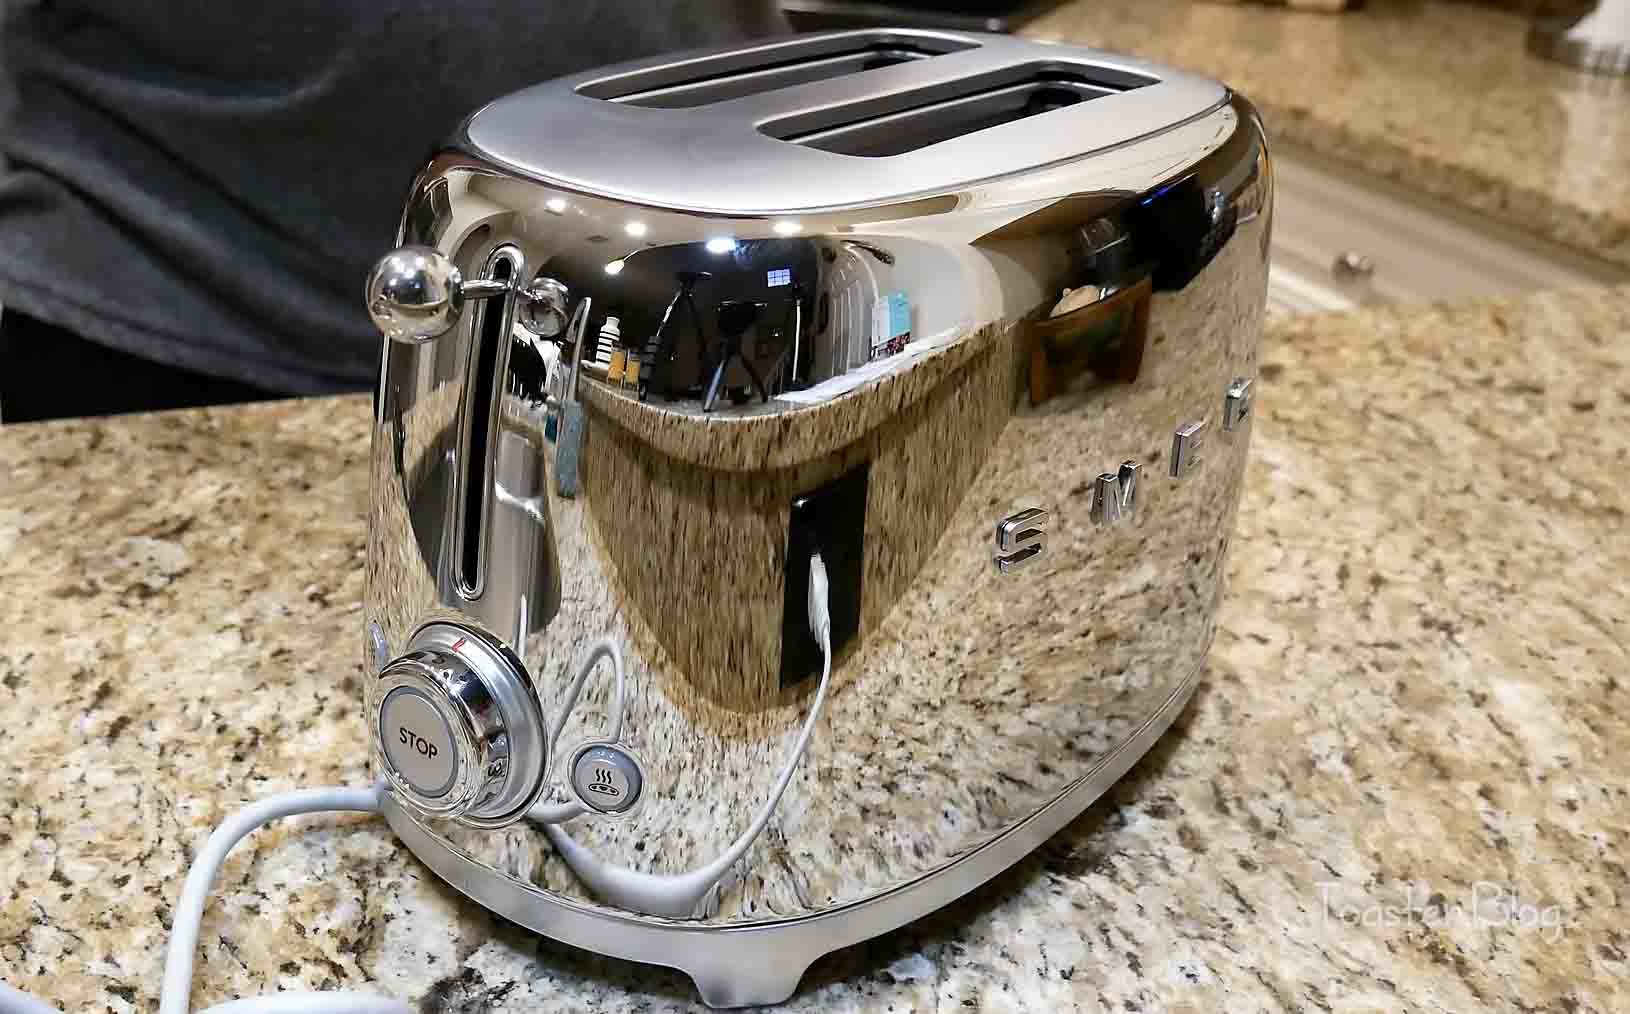 https://toaster.blog/wp-content/uploads/Best-chrome-toaster-1.jpg